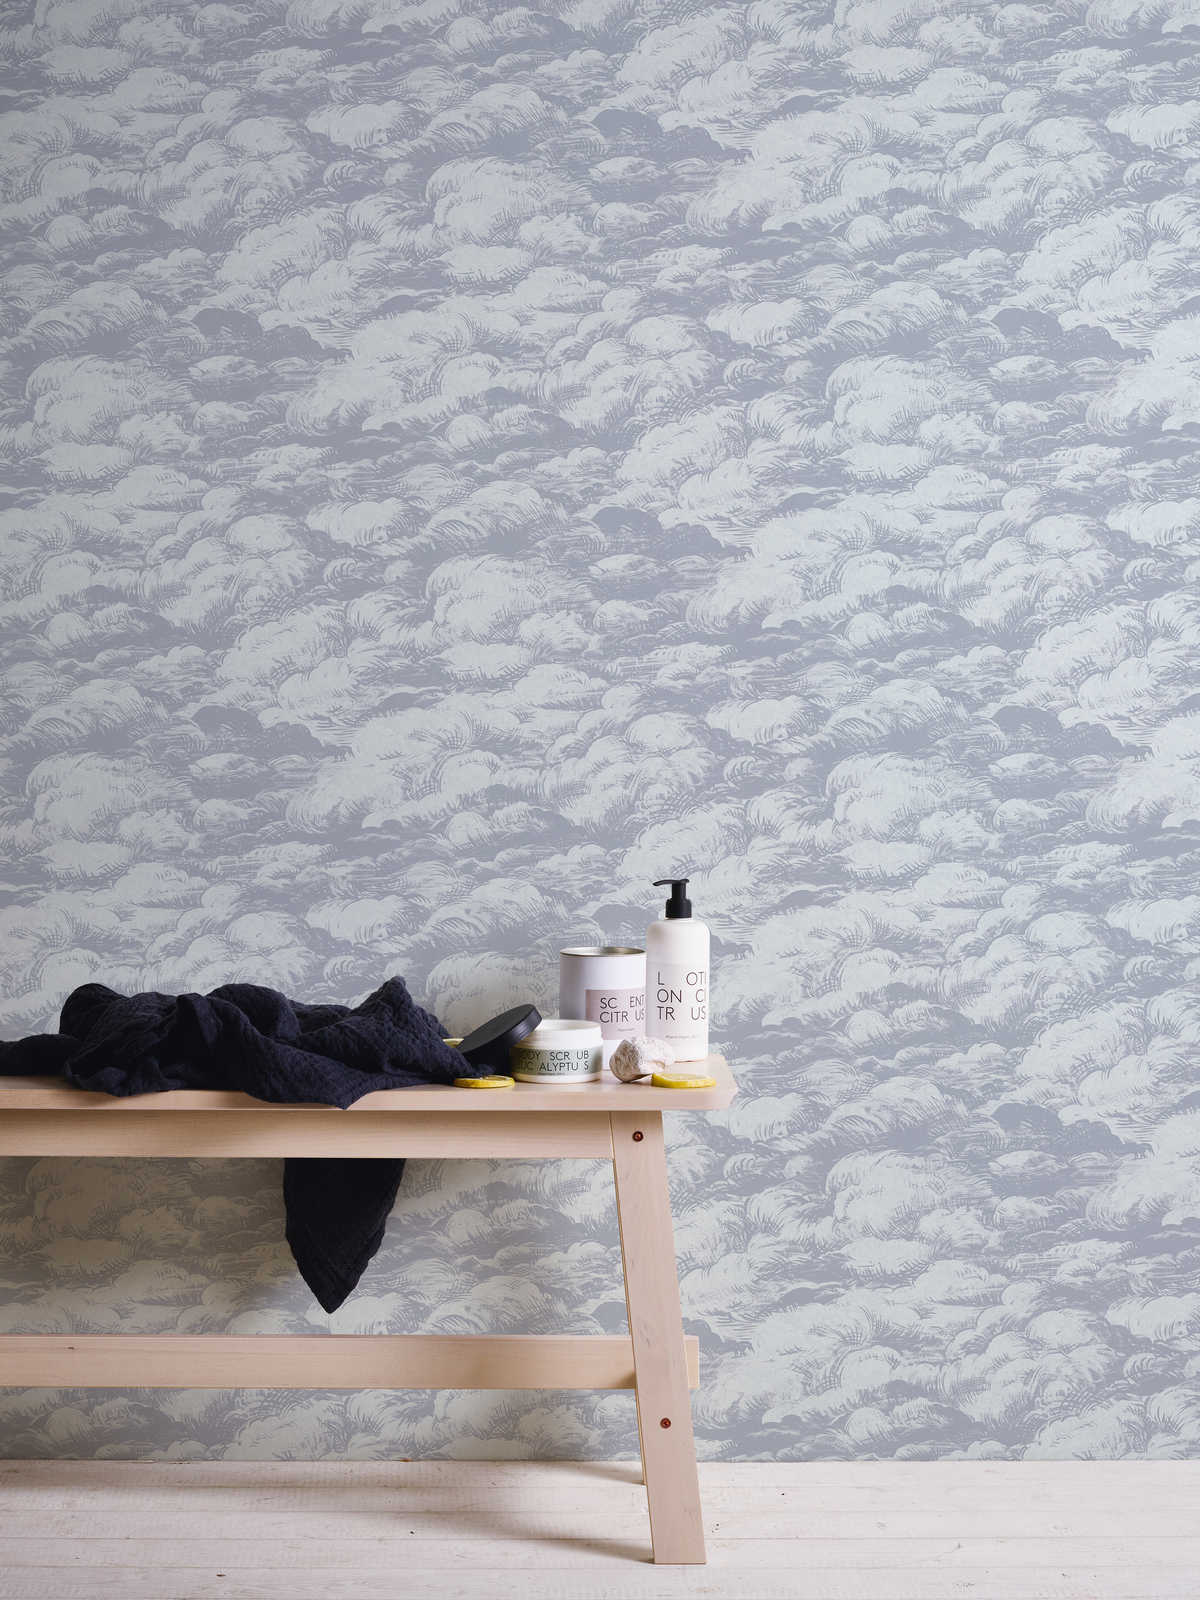             behang grijs met natuurmotief in vintage stijl - grijs, wit
        